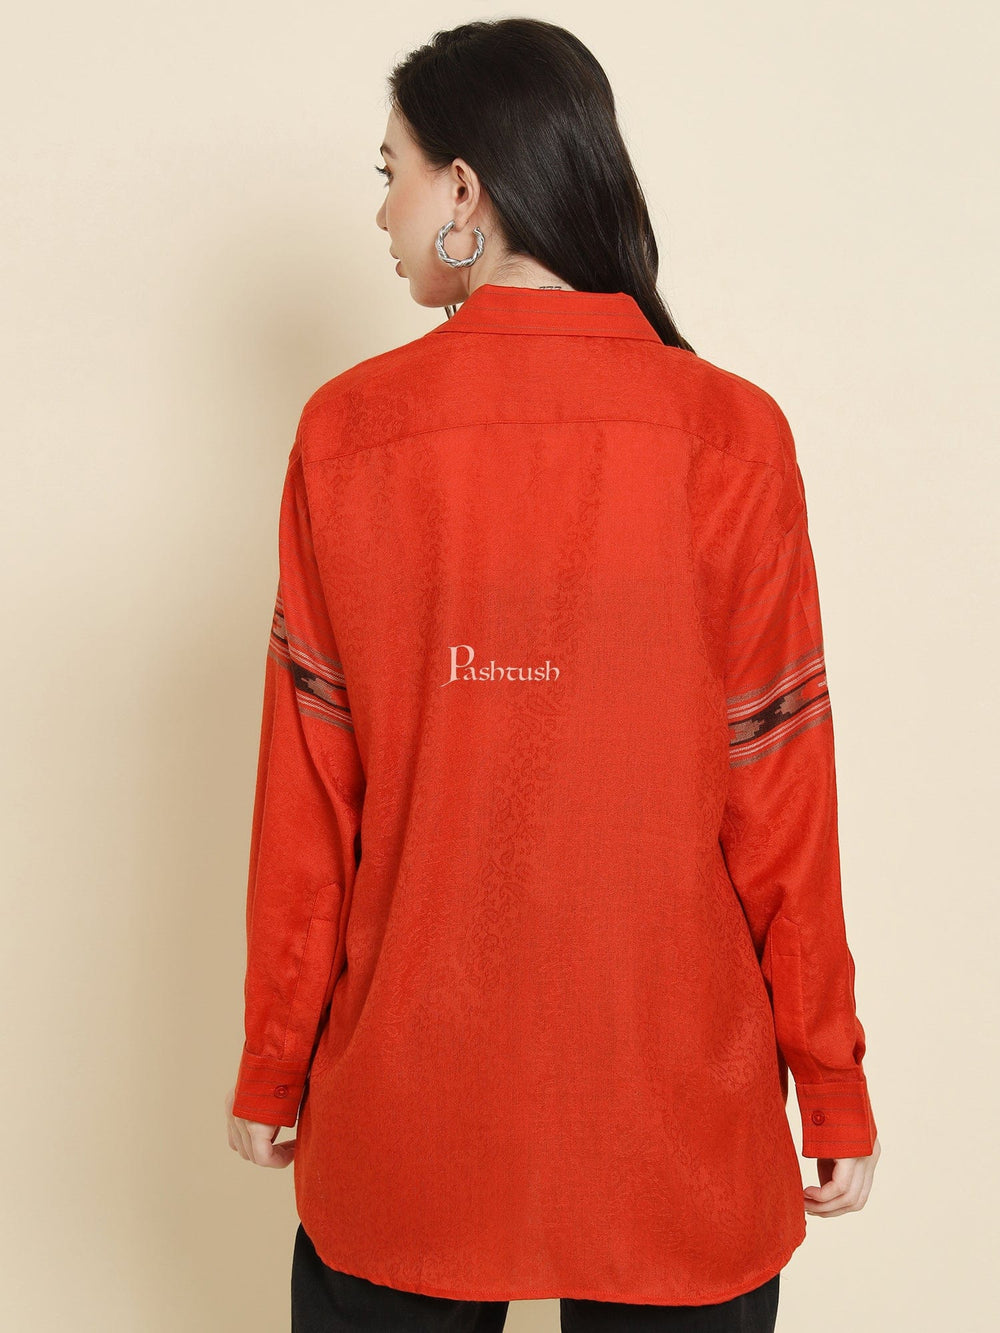 Pashtush India Womens Shirt Pashtush Womens Oversized Casual Woollen Shirt, Scarlet Red